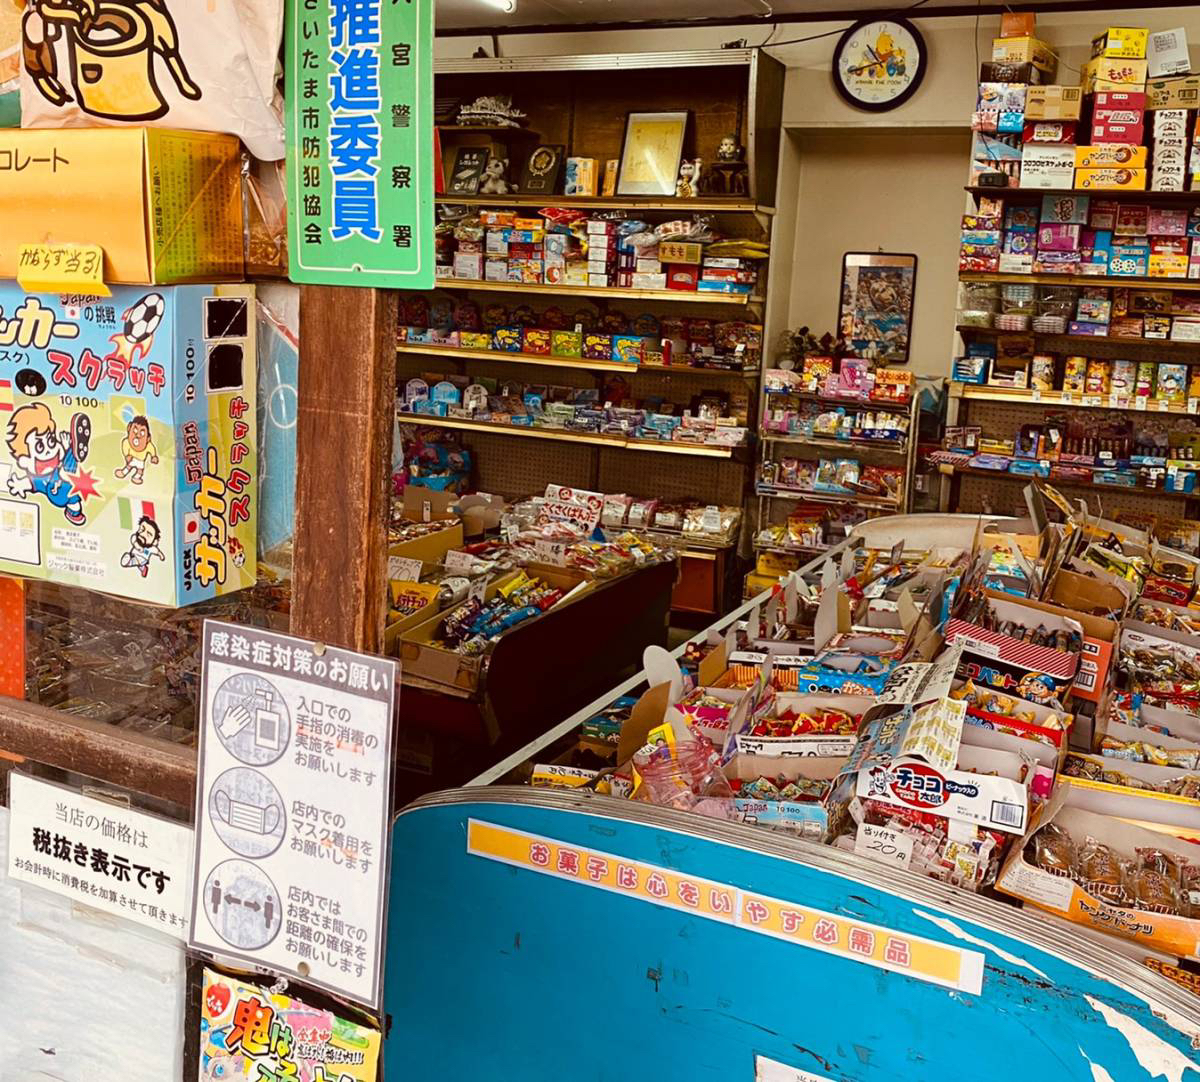 大宮区の街中にある駄菓子屋『福屋』に行ってきた。昔ながらの店に大人も子供も夢中で買い物。